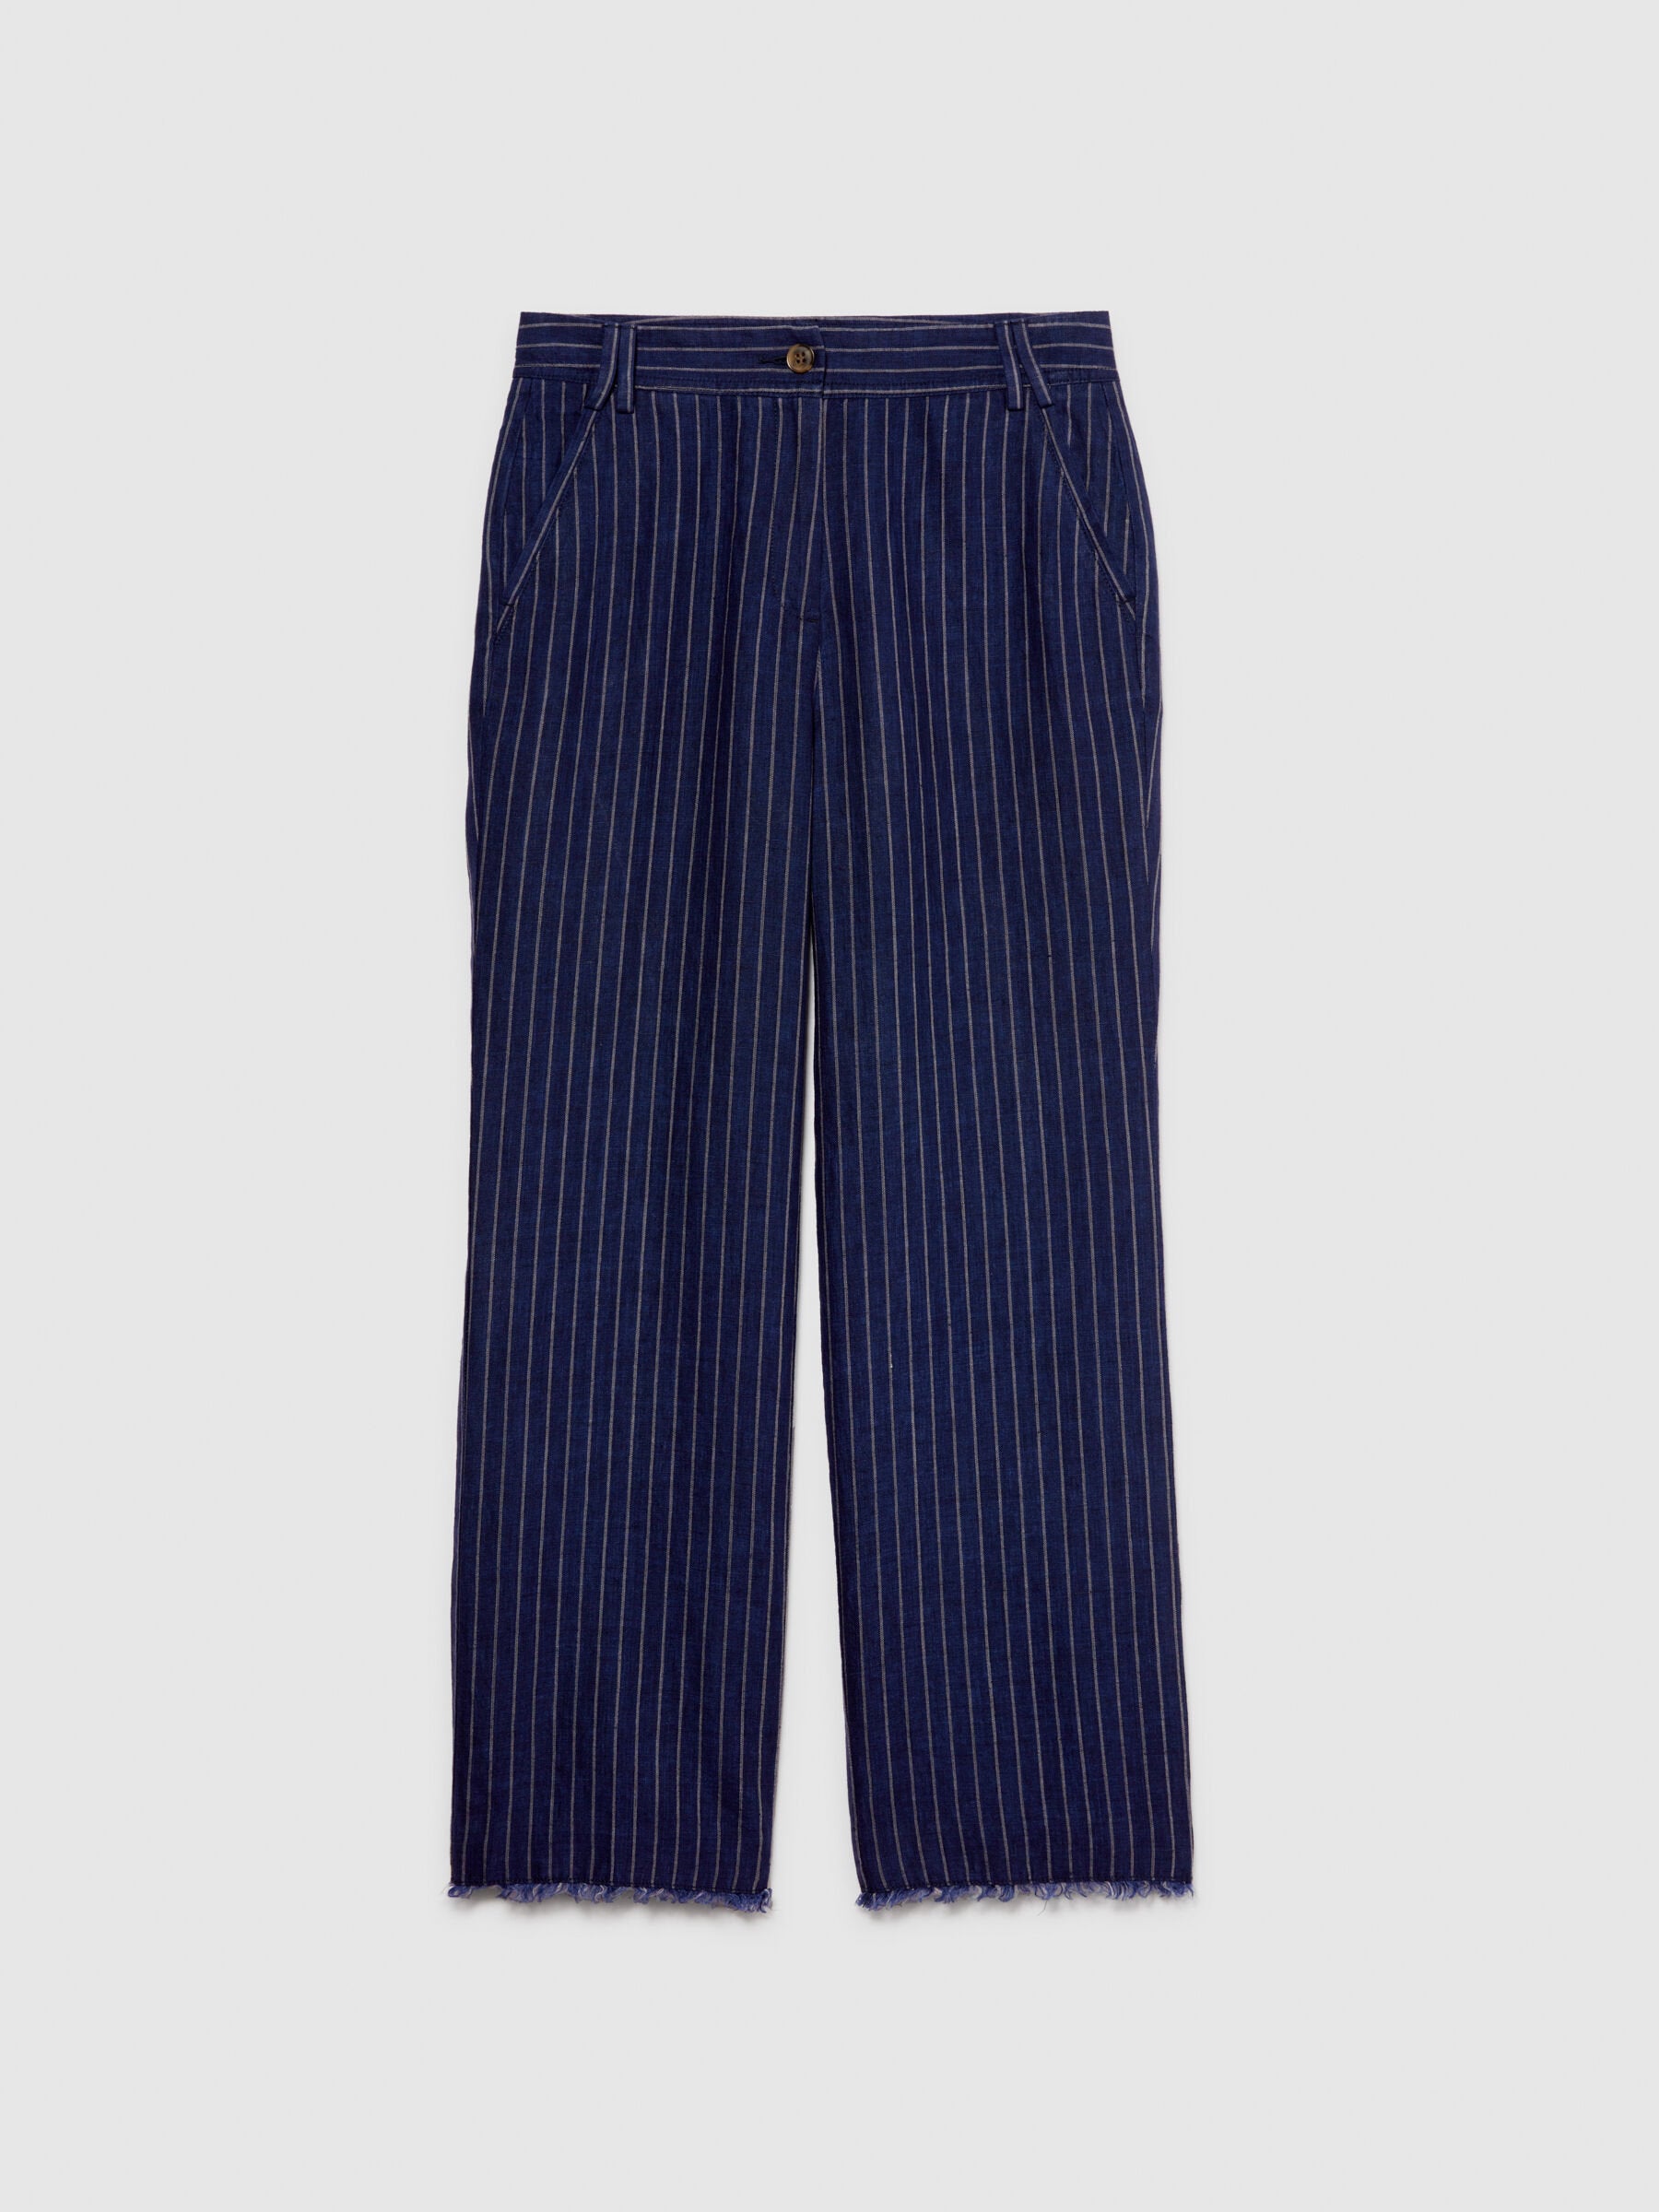 Pinstripe Trousers In 100% Linen_4NTHLF055_902_06